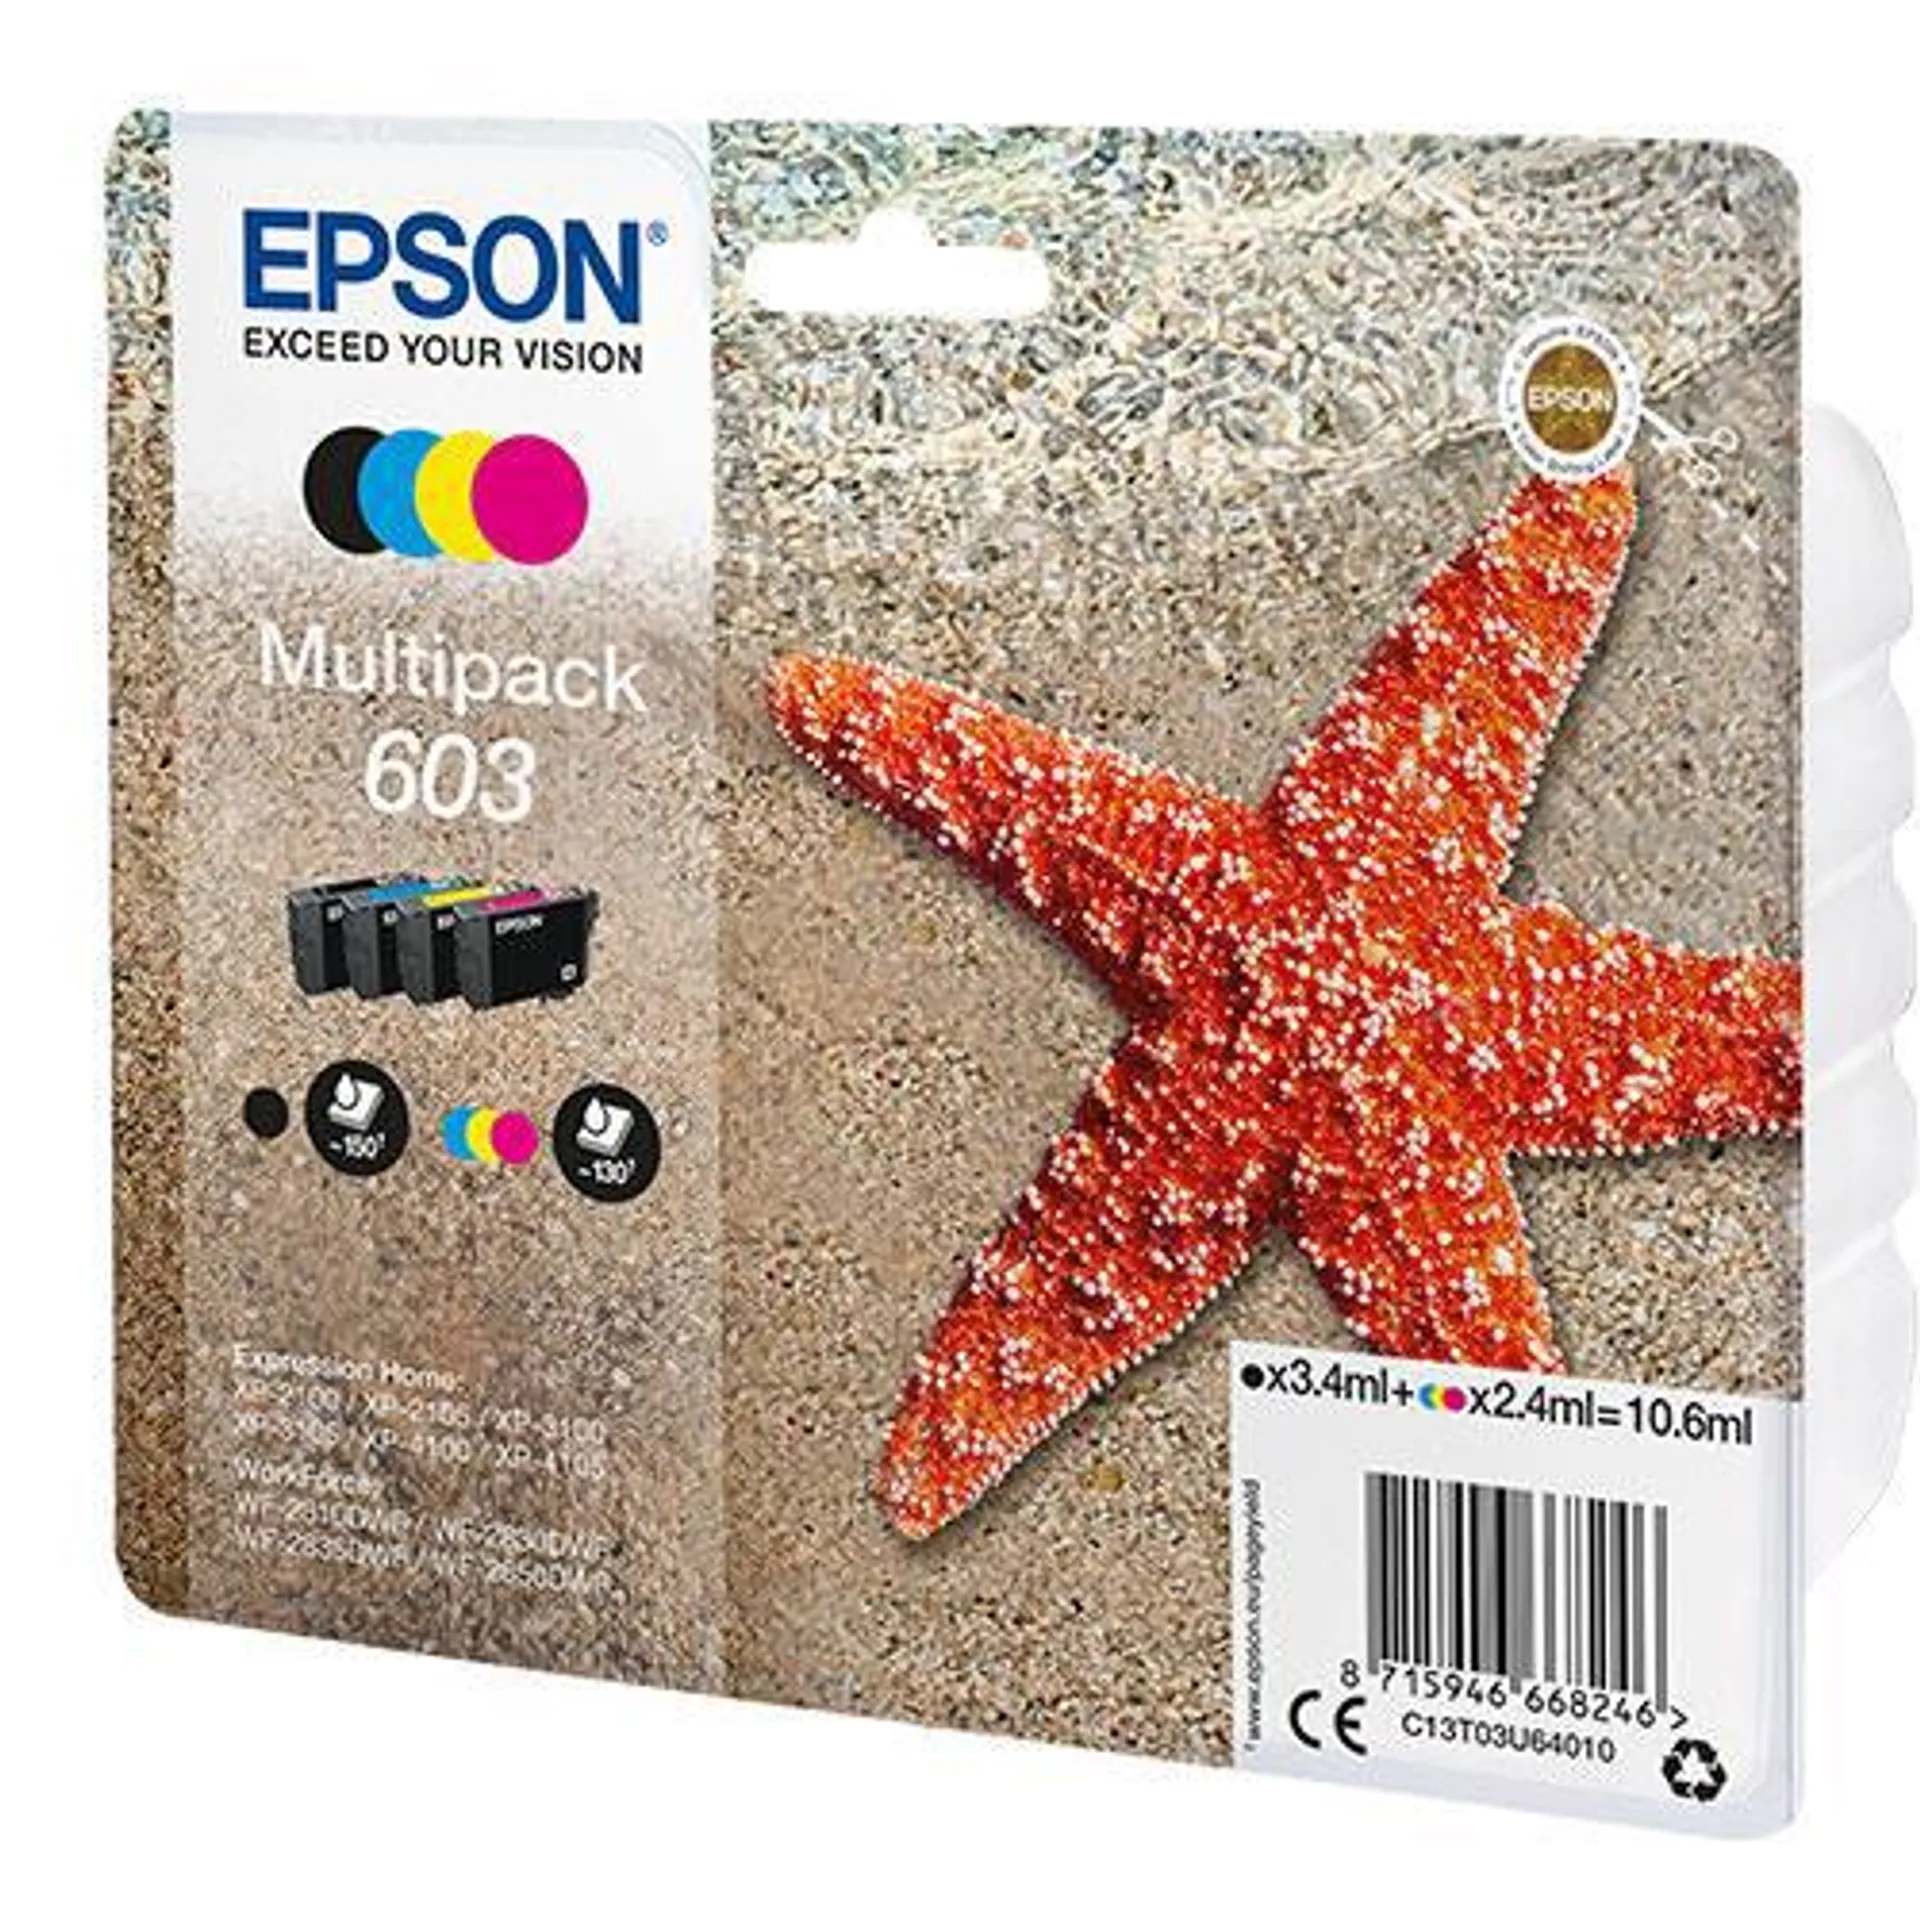 Epson 603 Iink Cartridge Multipack